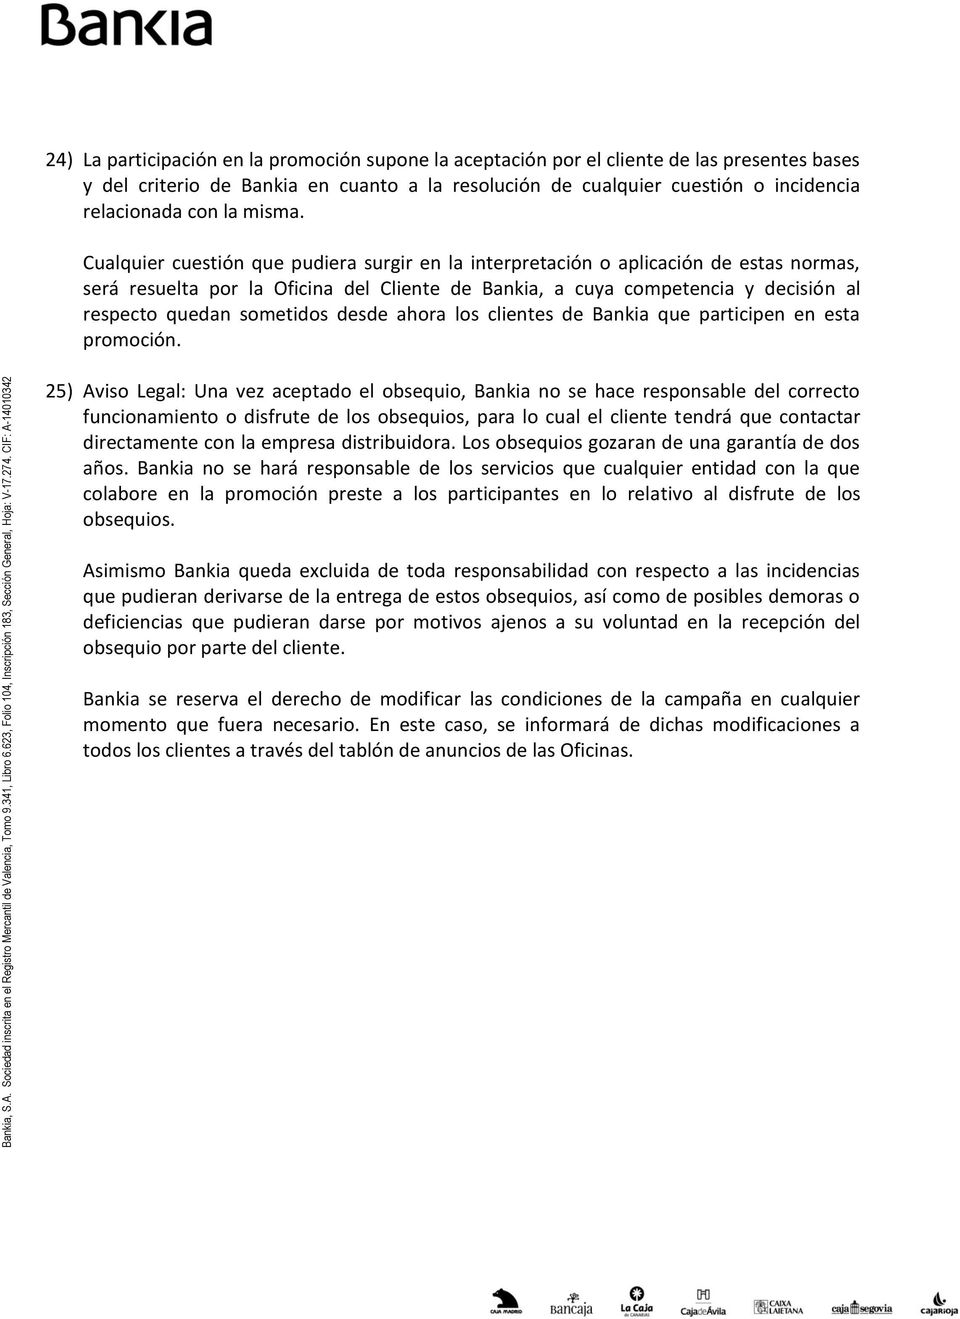 Cualquier cuestión que pudiera surgir en la interpretación o aplicación de estas normas, será resuelta por la Oficina del Cliente de Bankia, a cuya competencia y decisión al respecto quedan sometidos